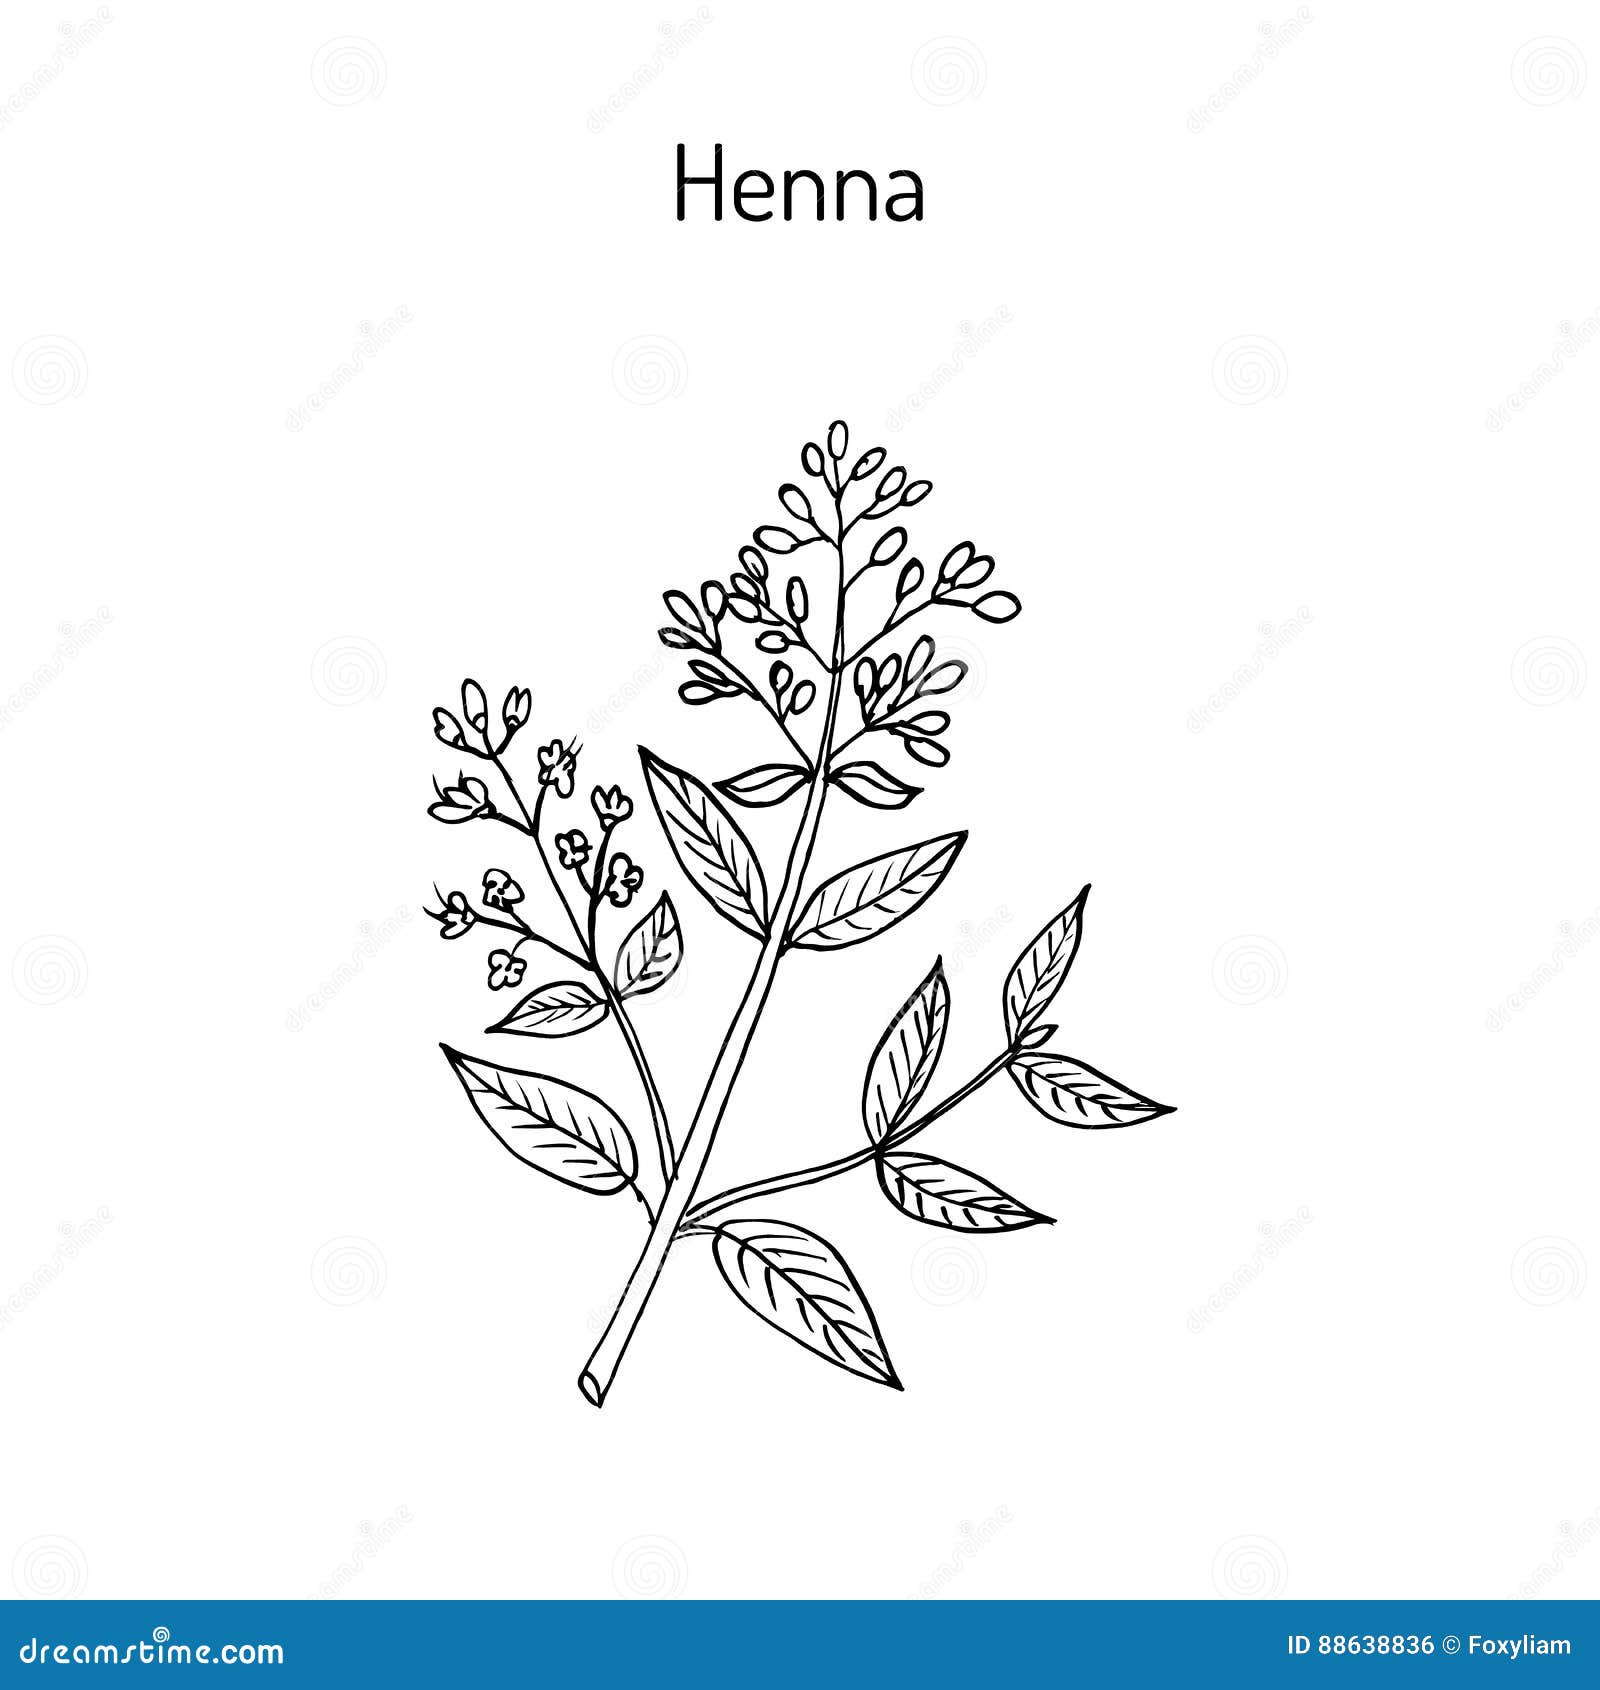 henna or hina